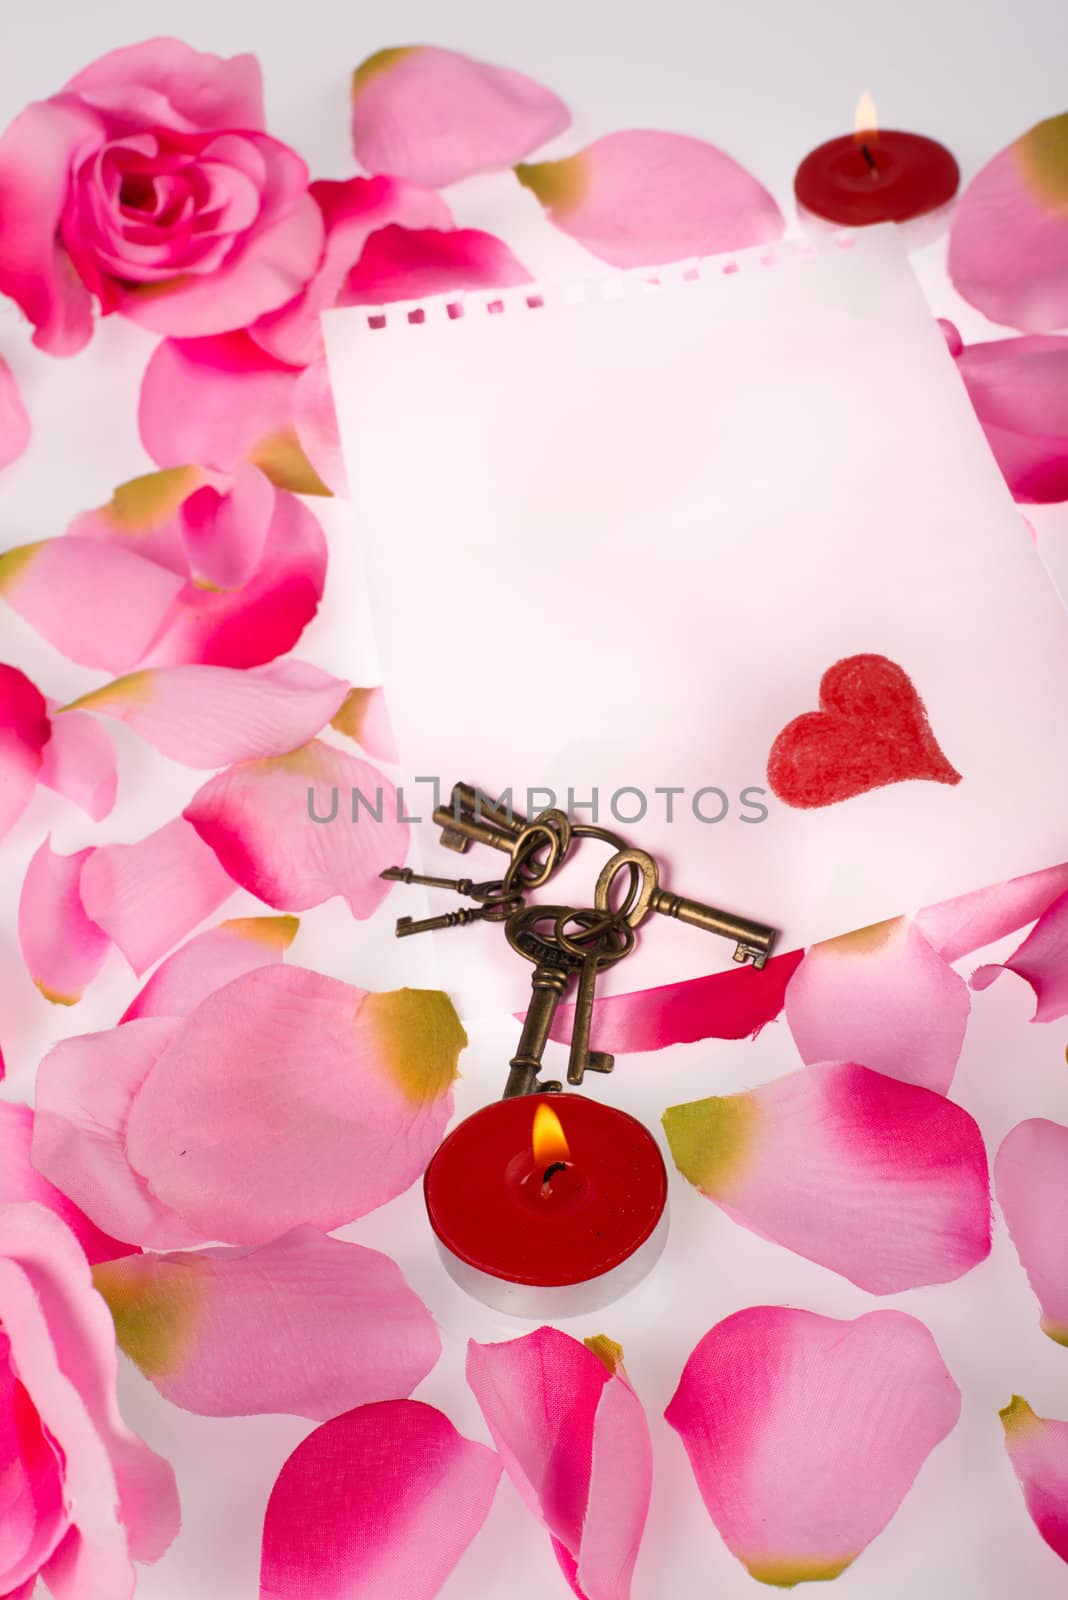 Keys, petals and a note, a Valentines concept